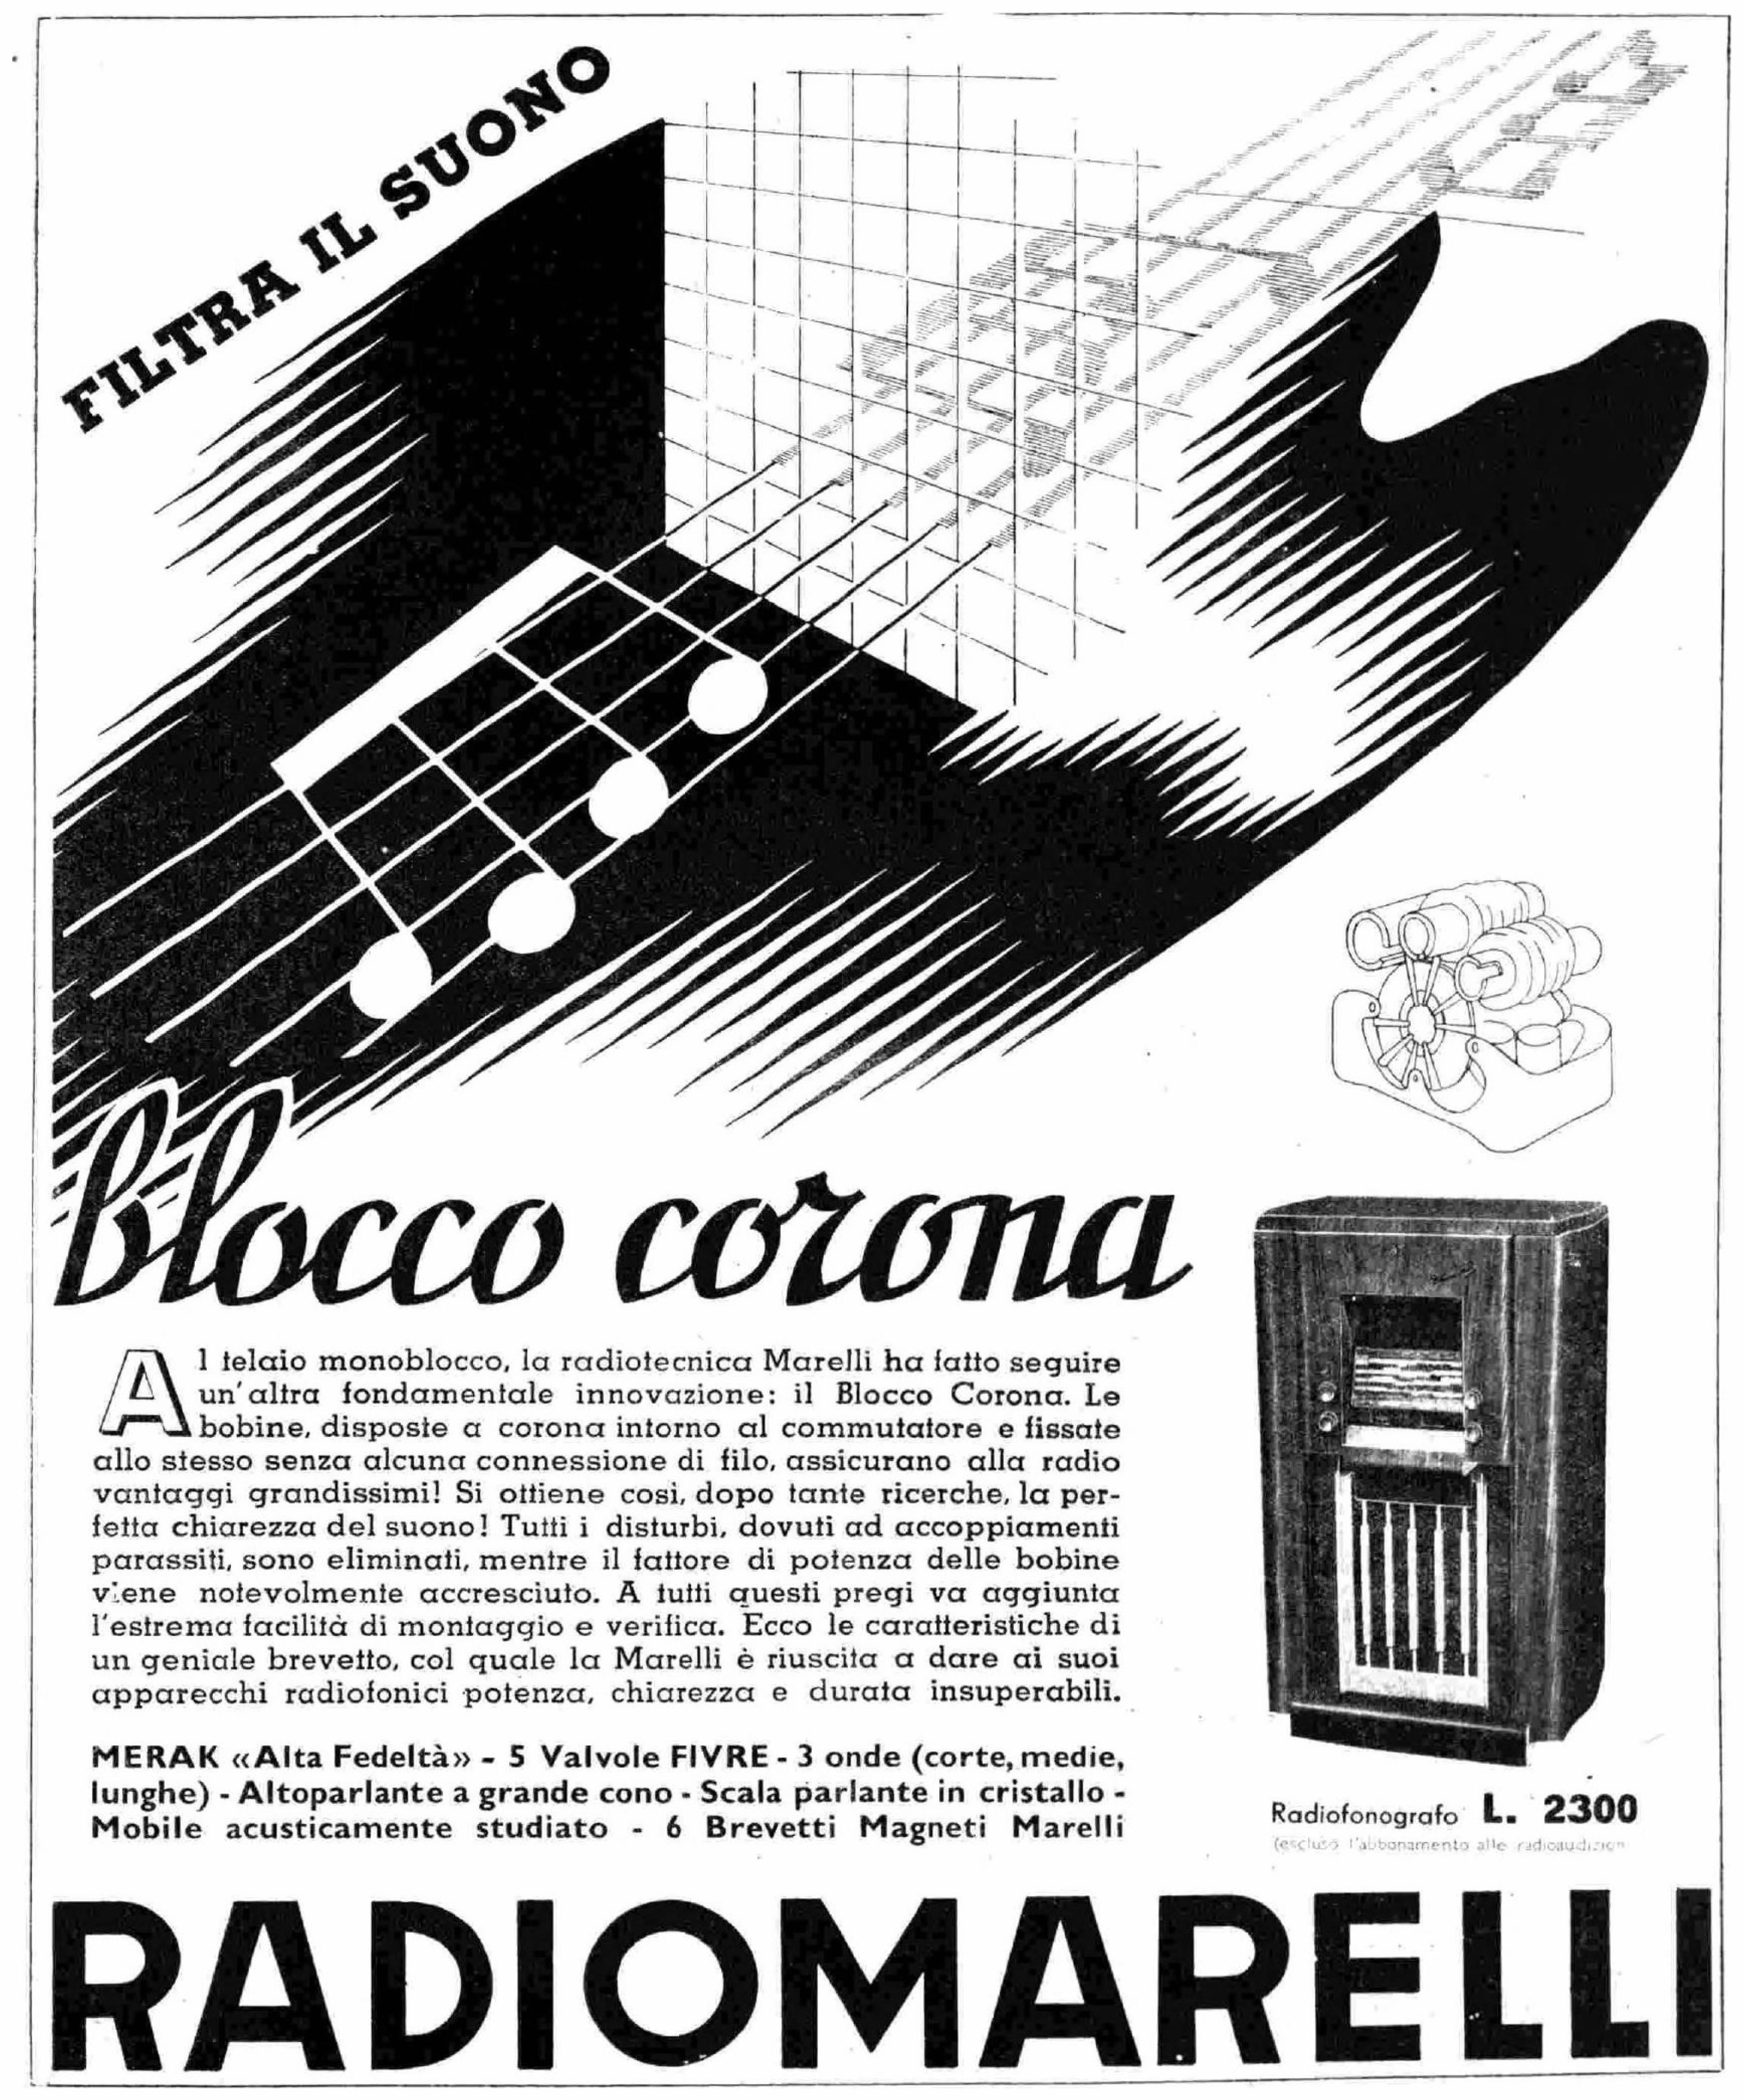 Radiomarelli 1937 0.jpg